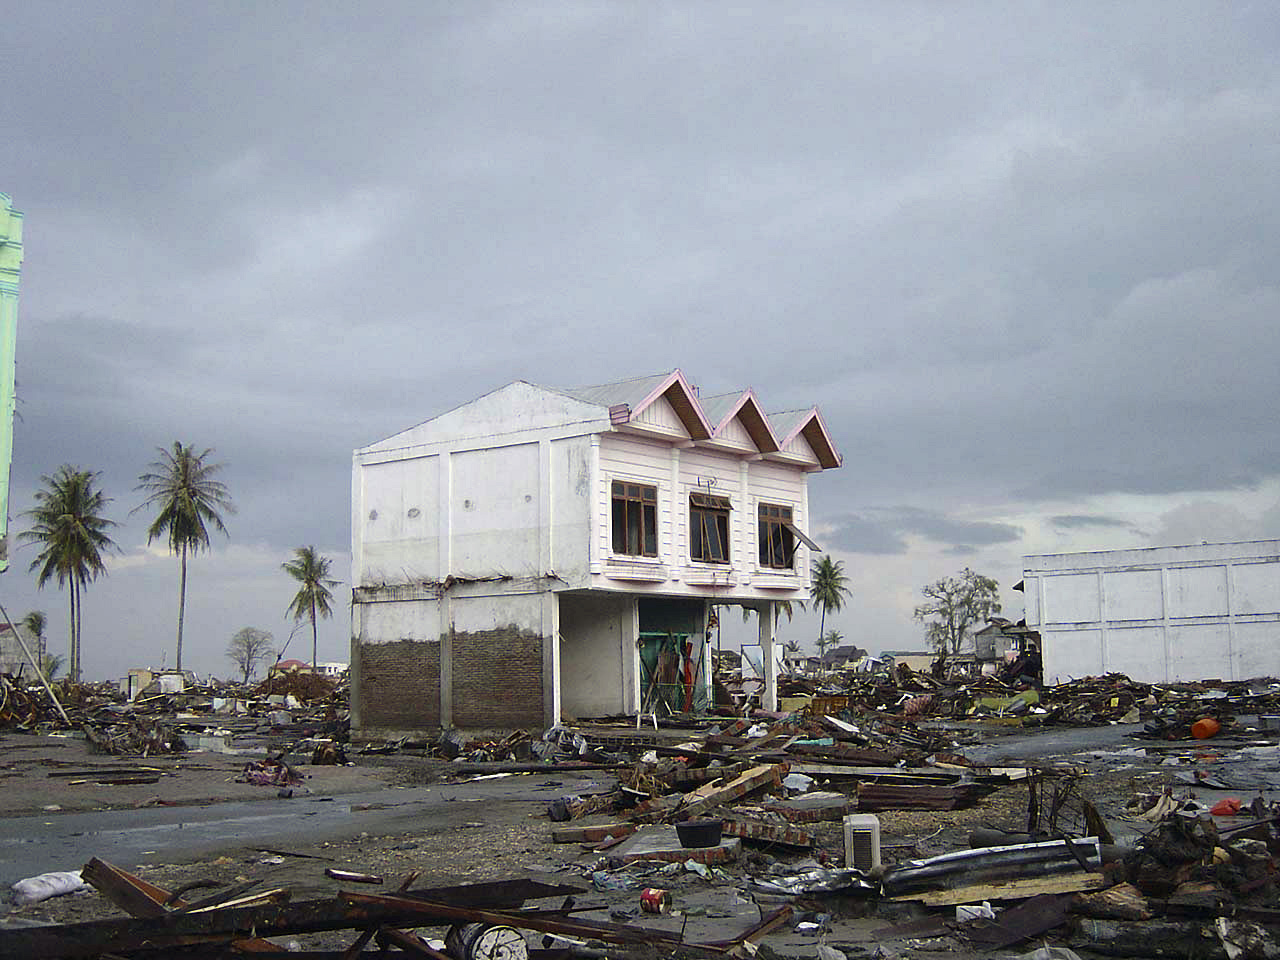 חורבן והרס בעיר Banda Aceh באינדונזיה לאחר אסון הצונאמי בשנת 2004 (צילום: Michael L. Bak, ויקימדיה)